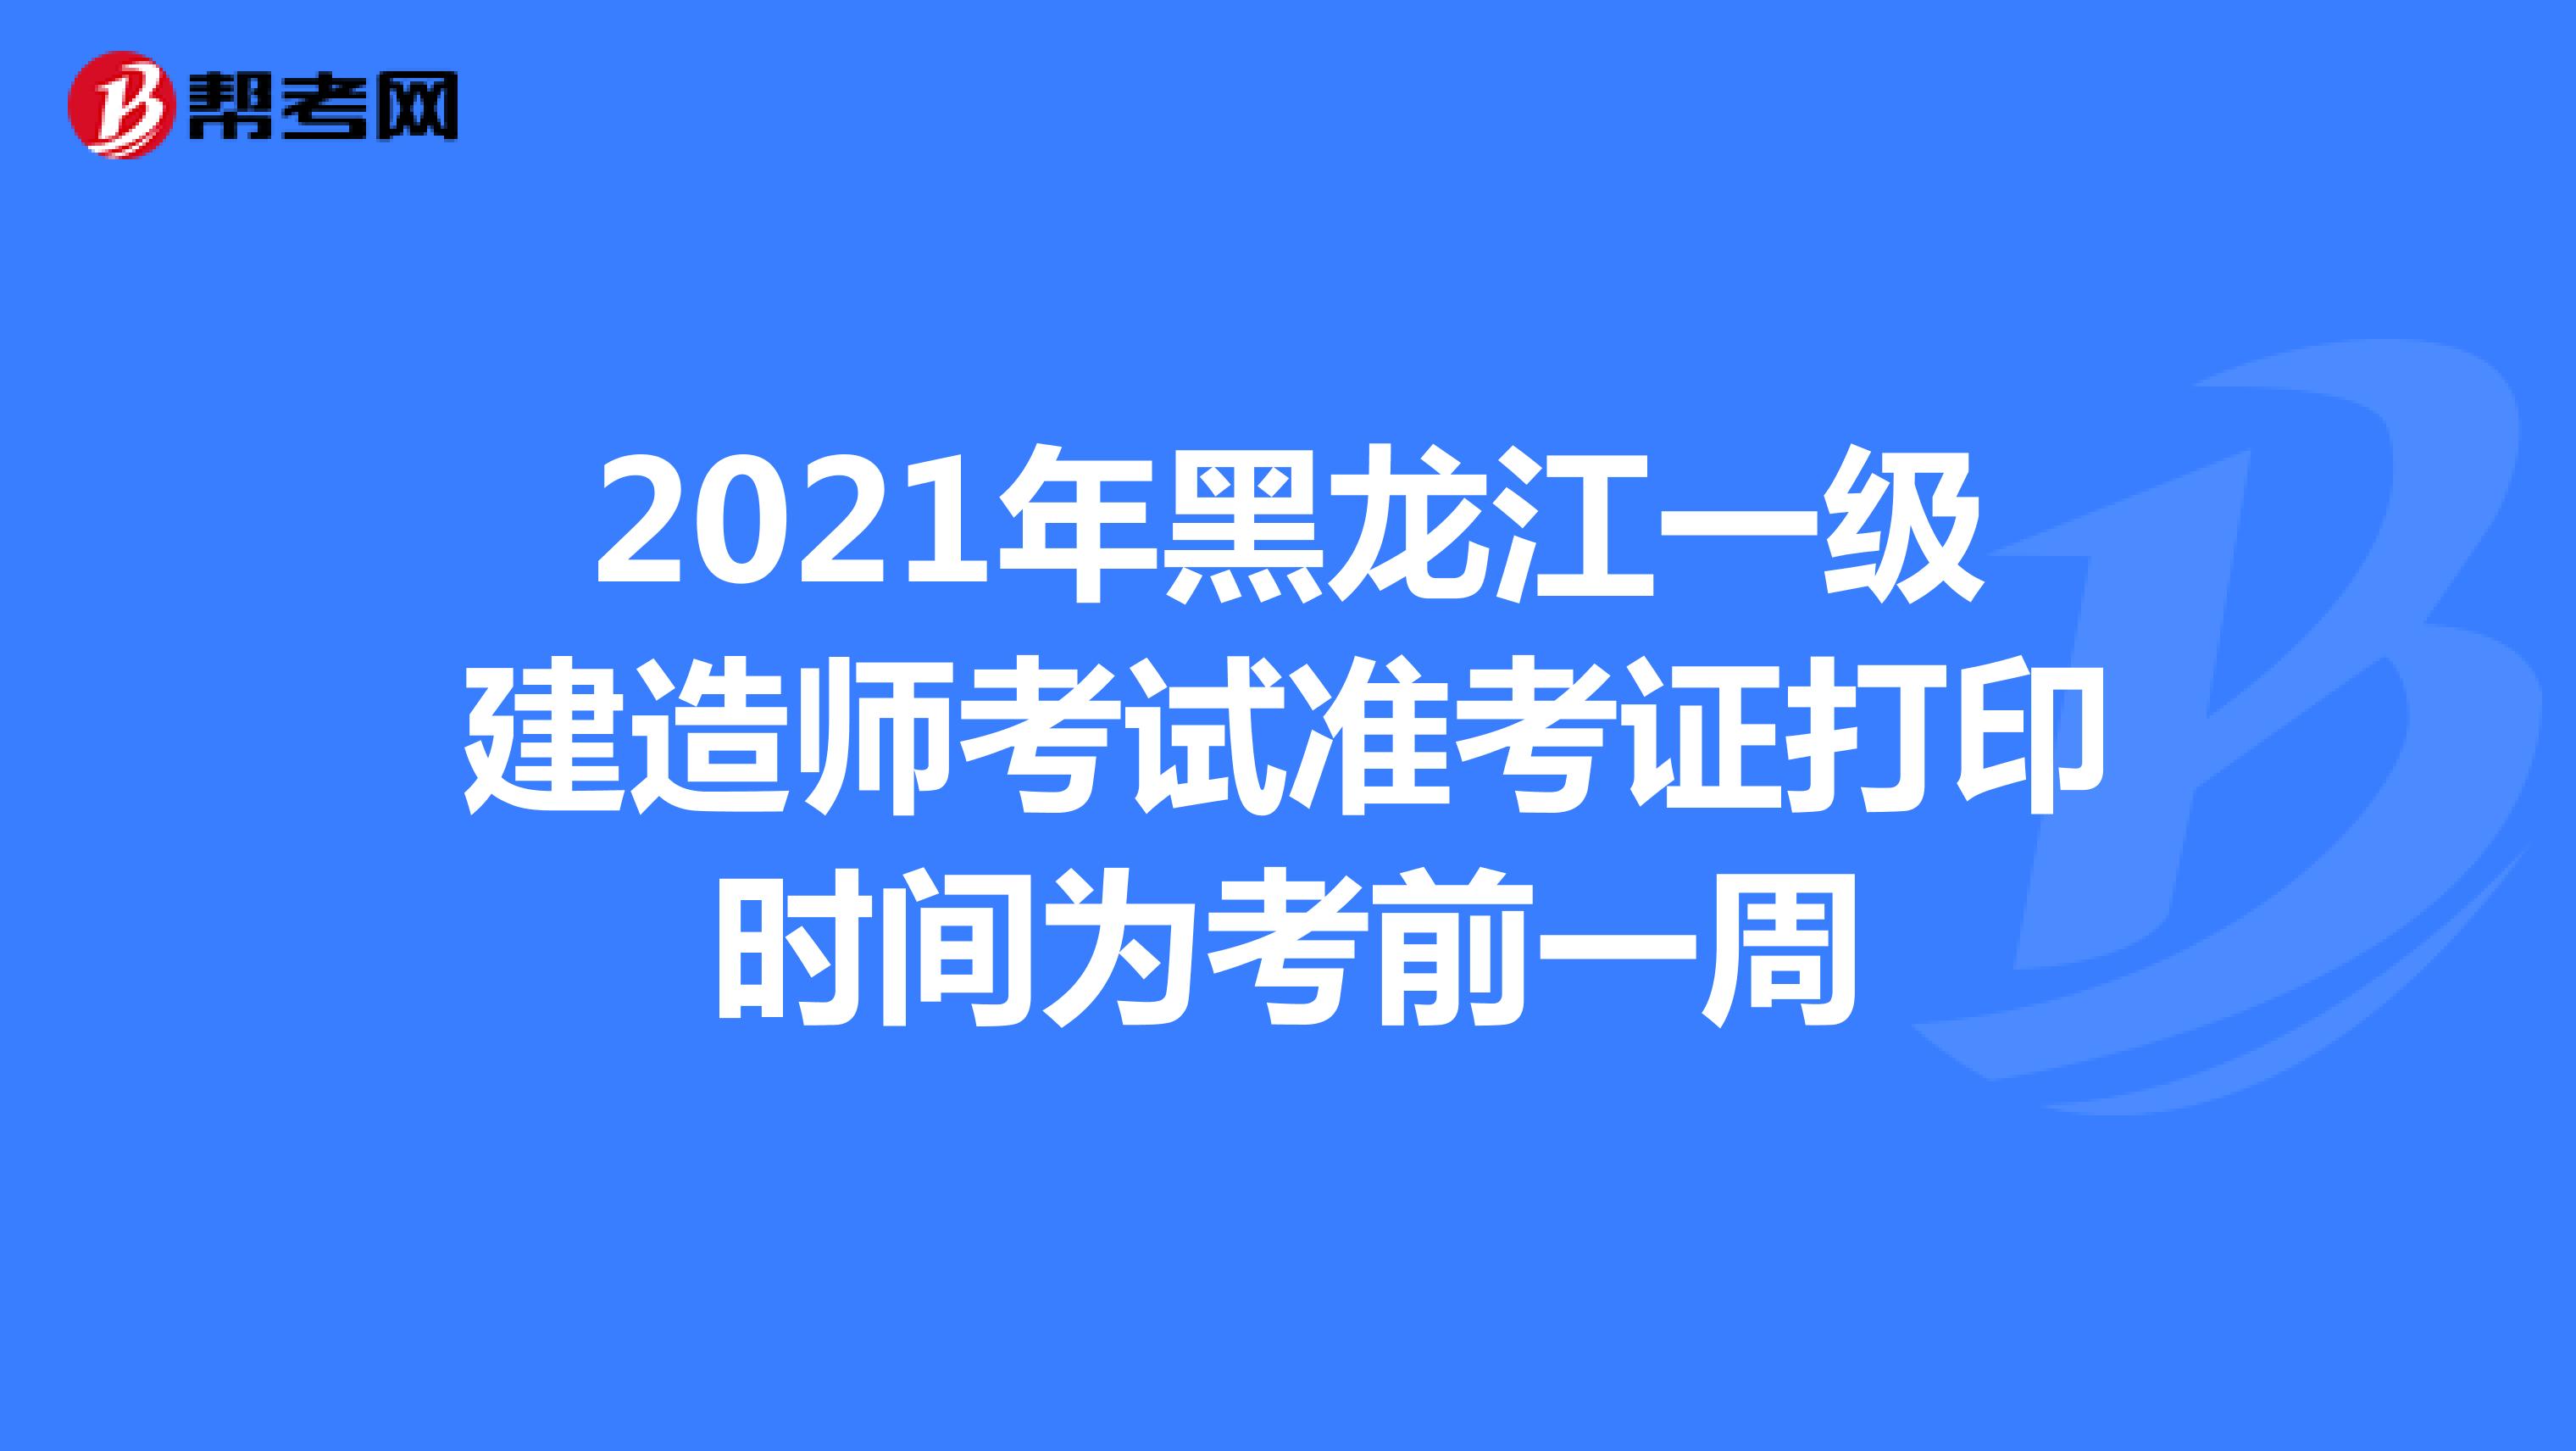 2021年黑龙江一级建造师考试准考证打印时间为考前一周